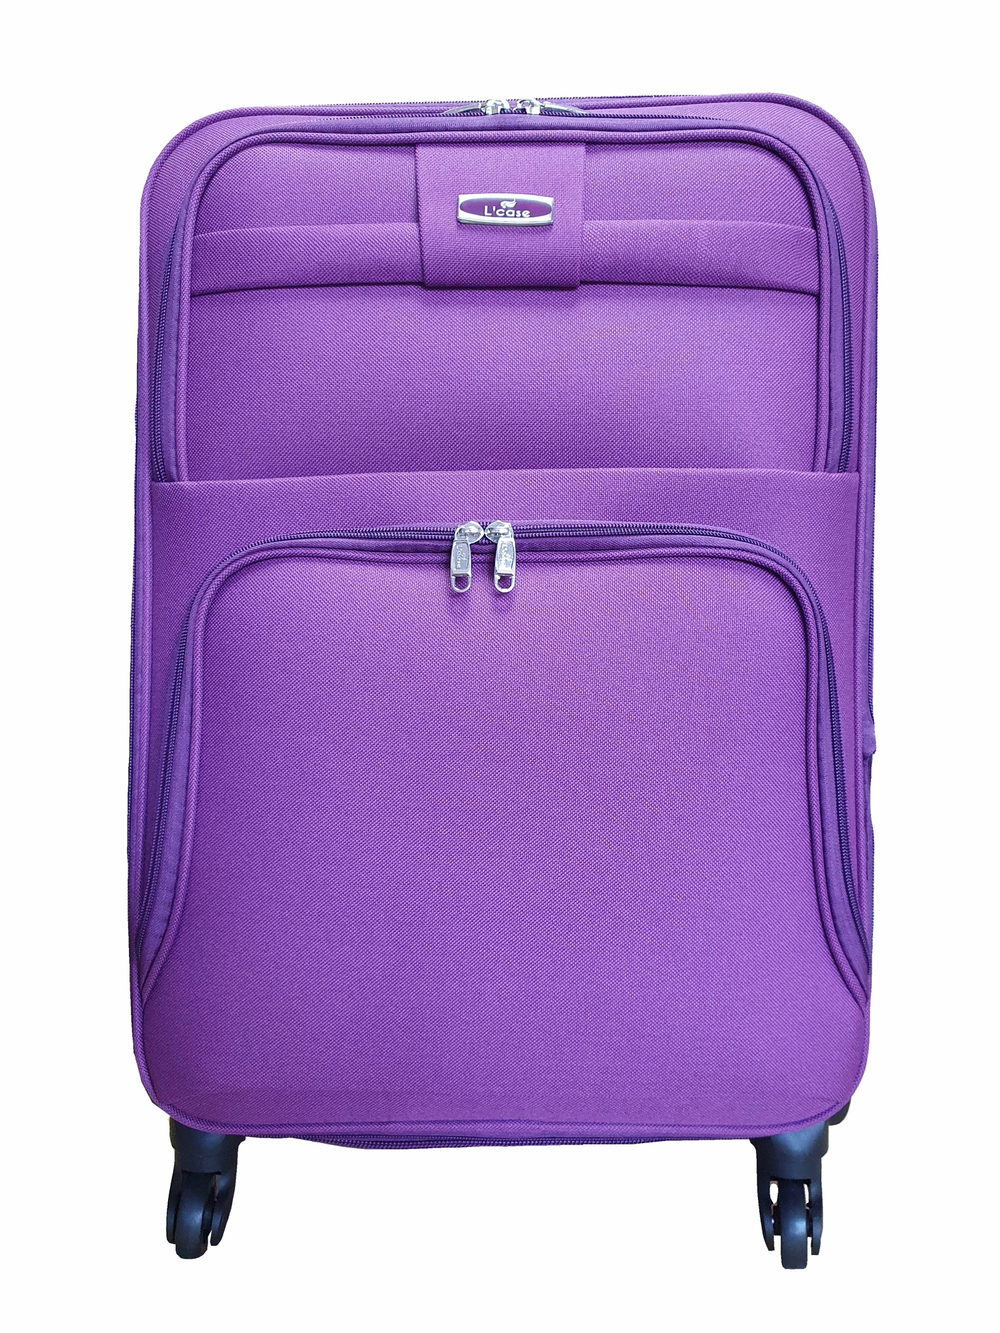 Чемодан на колесах тканевый L’case Barcelona размера S+ (58х38х26 (+5) см), объем 47.5 литров, вес 3 кг, Фиолетовый